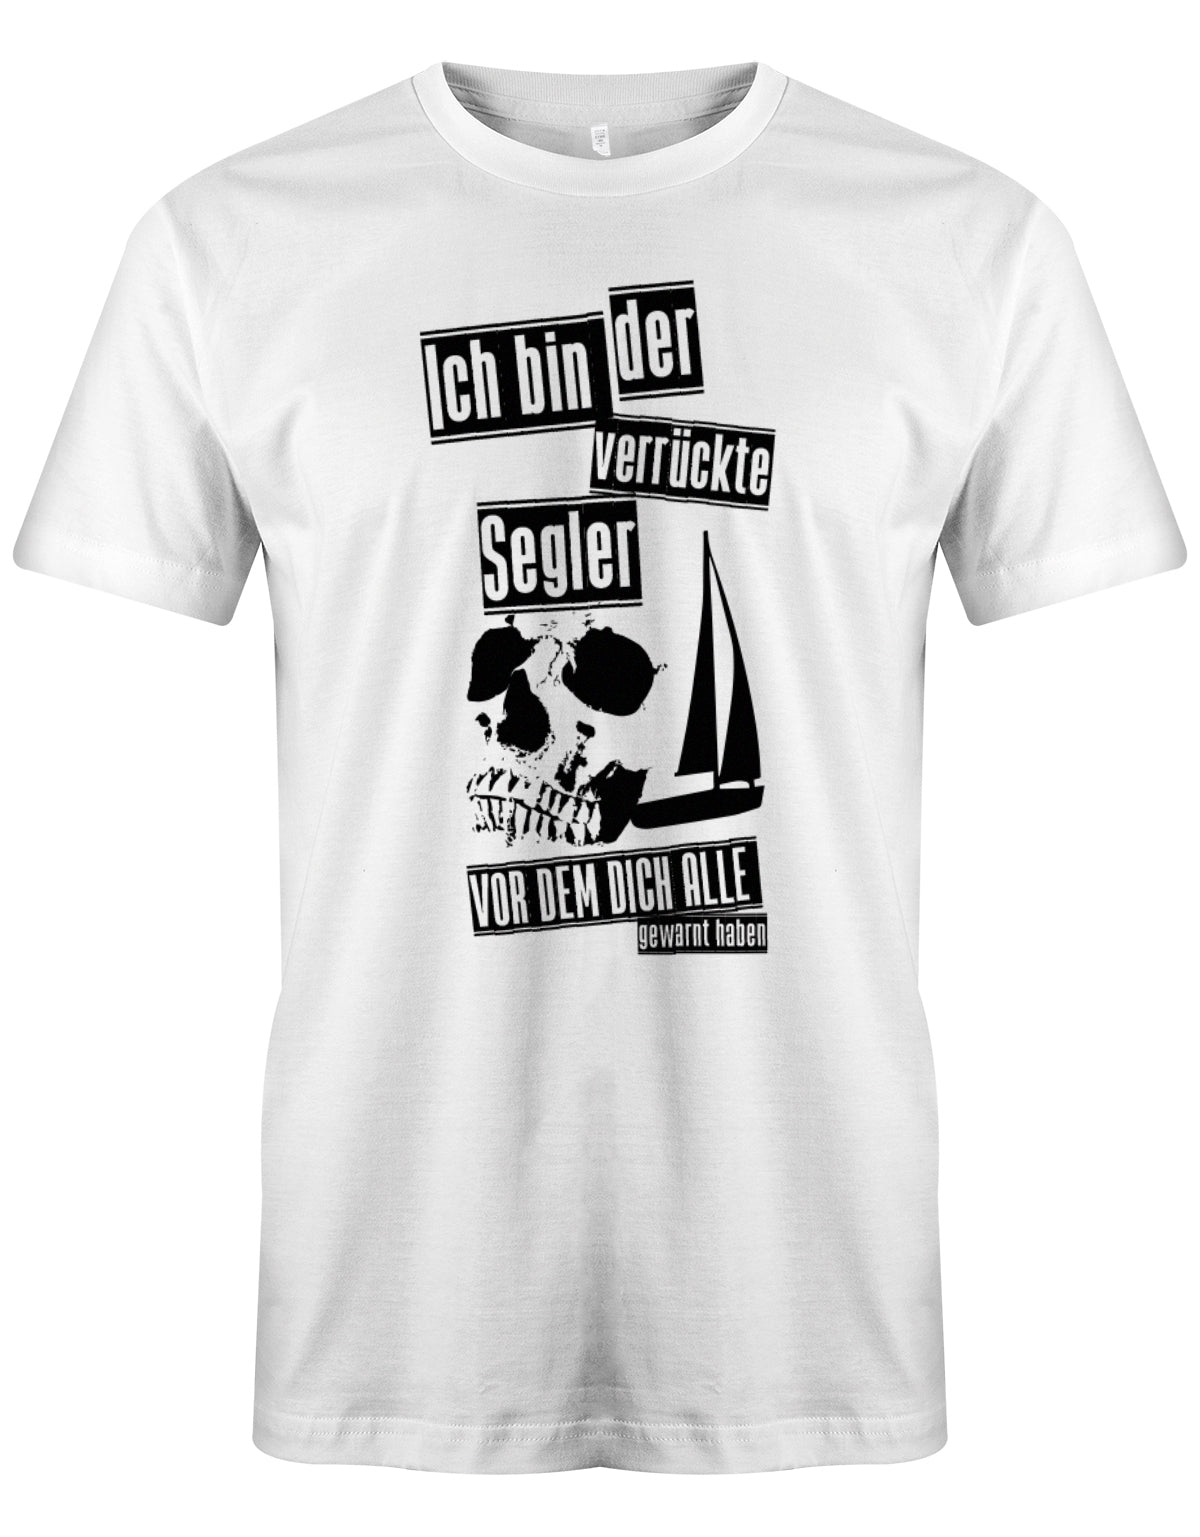 Das Segler t-shirt bedruckt mit "Ich bin der verrückte Segler vor dem dich alle gewarnt haben". Weiss